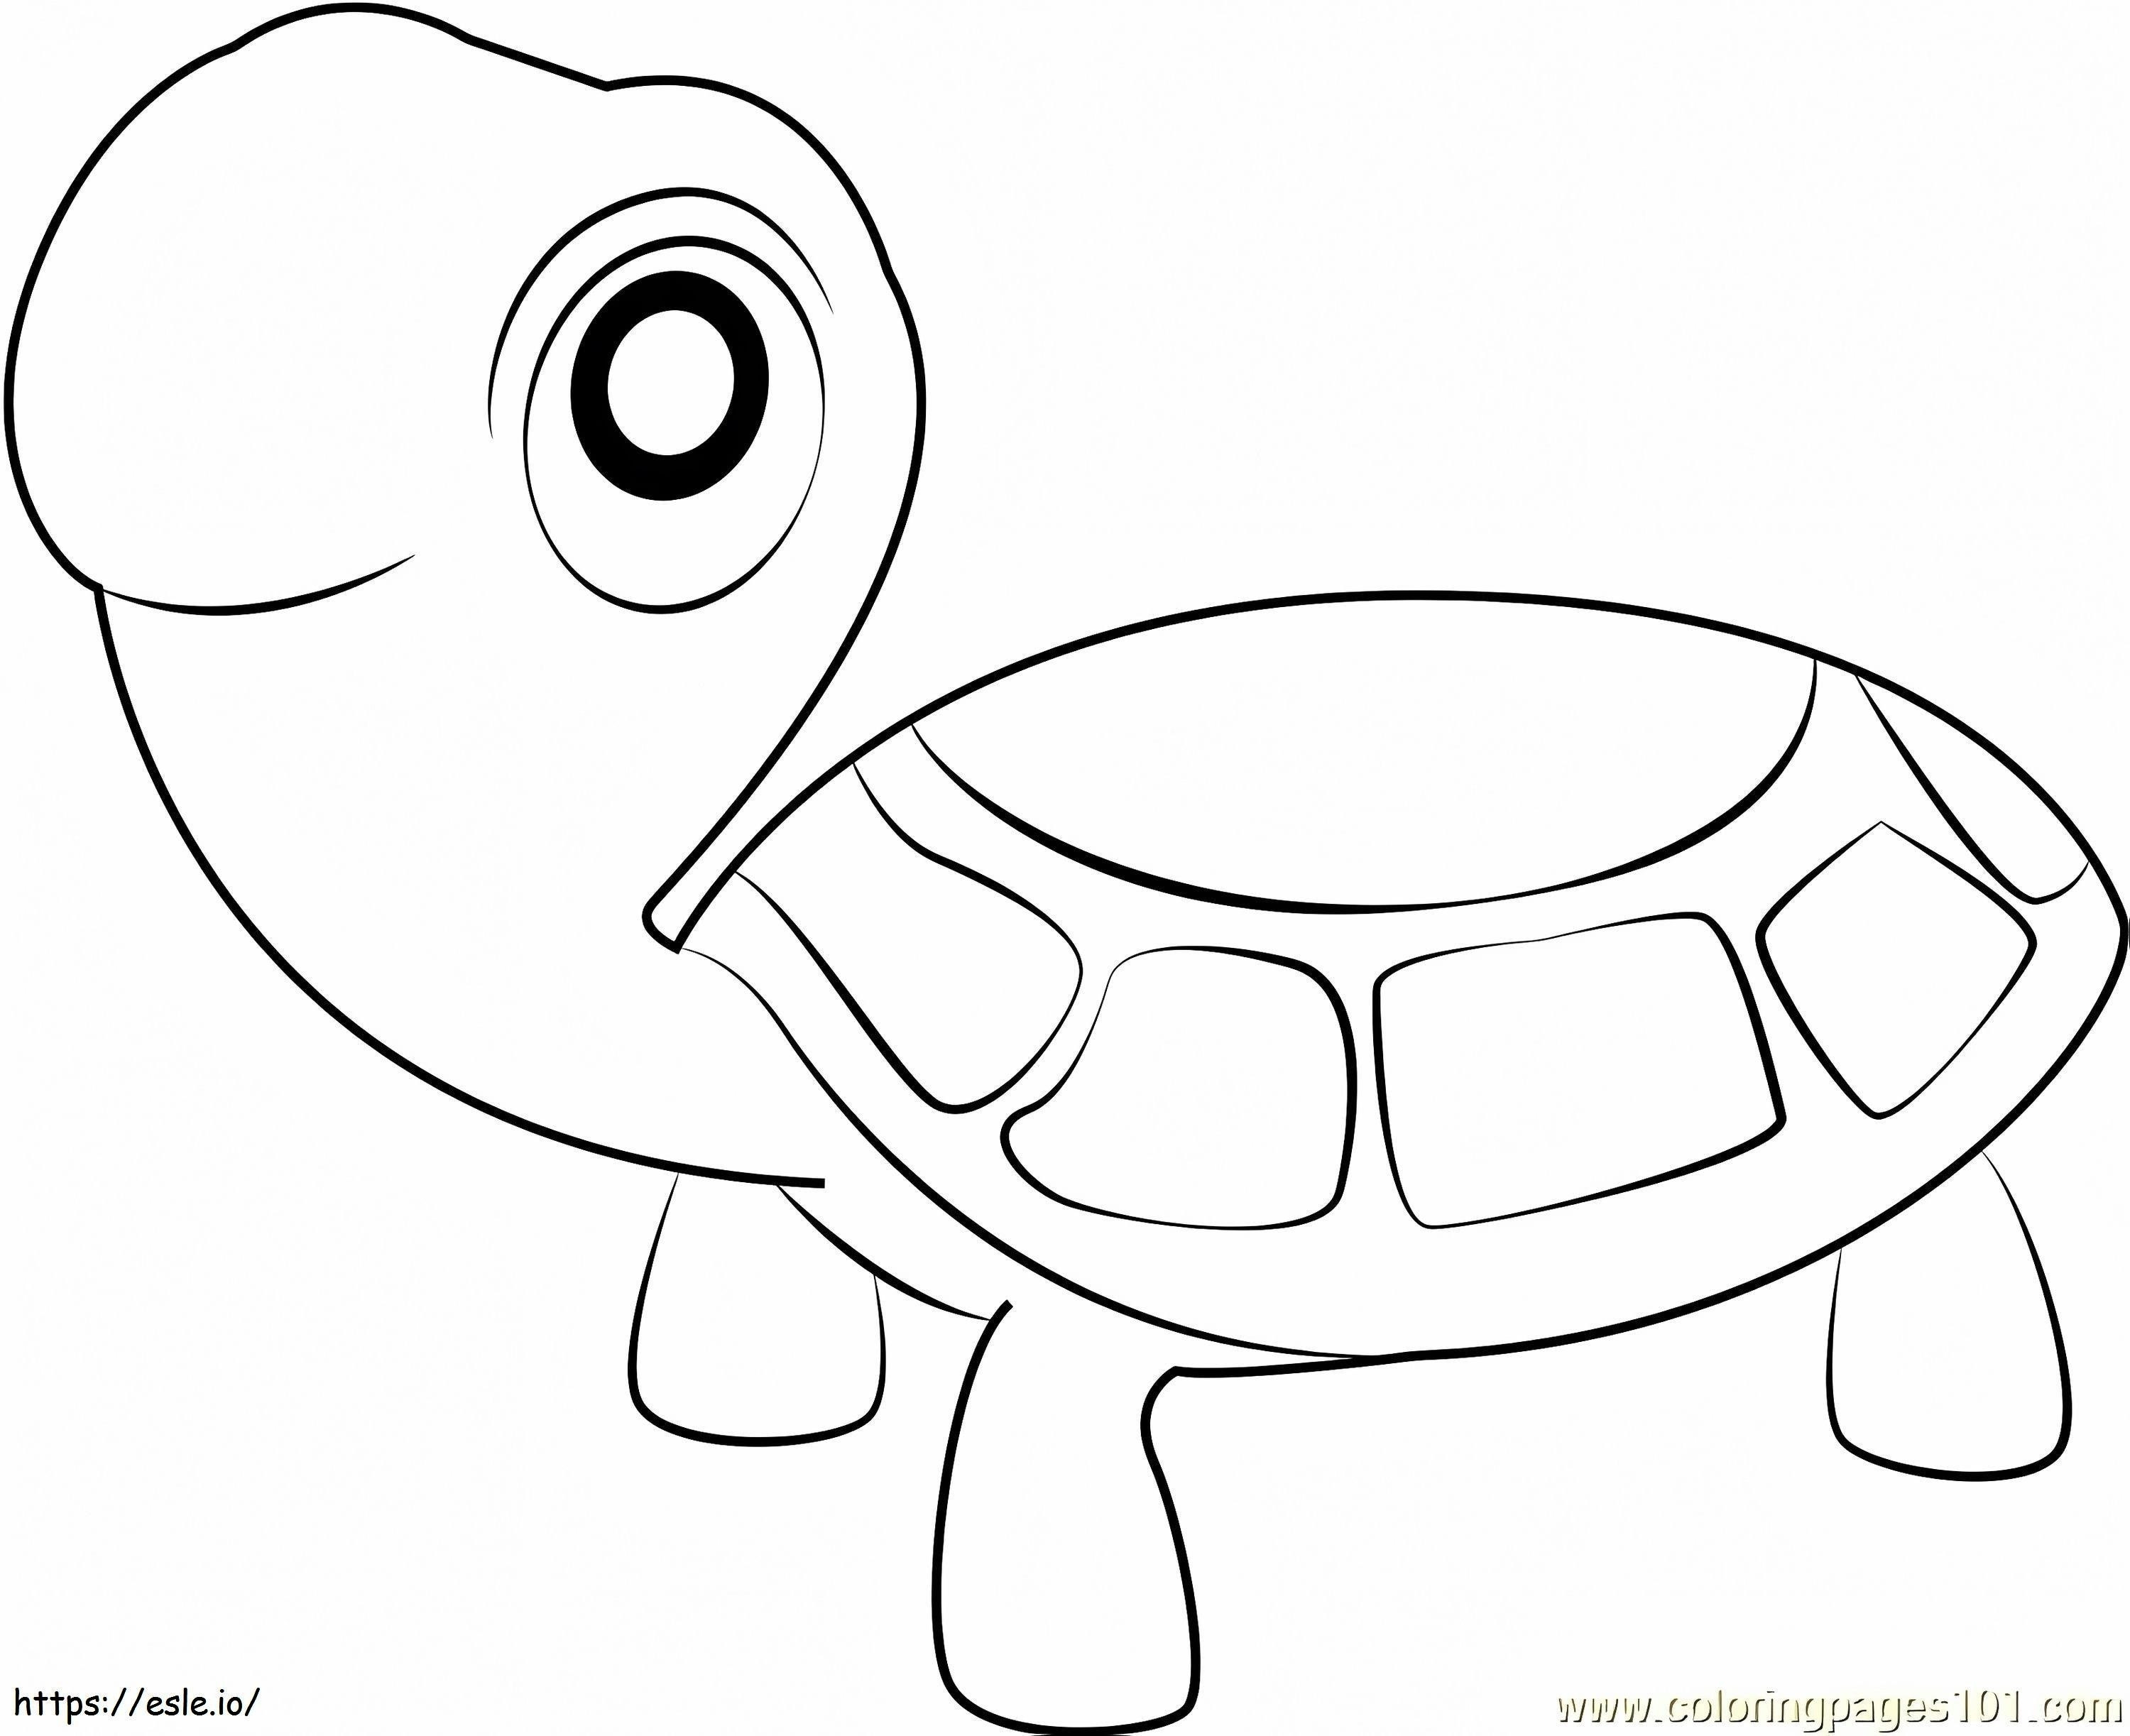 1530323180_Die Schildkröten ausmalbilder